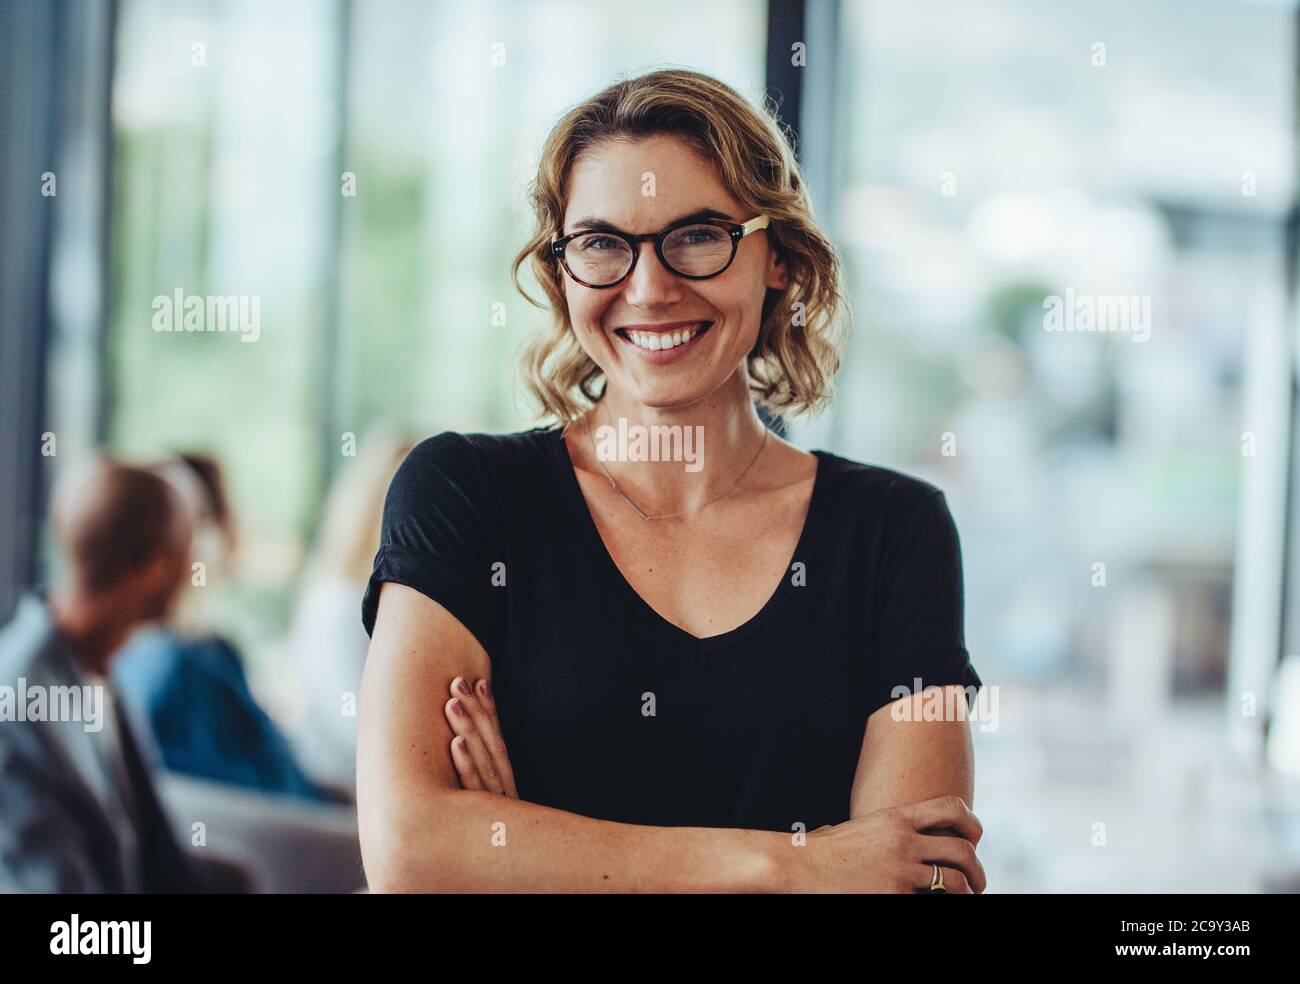 Porträt einer erfolgreichen professionellen Frau mit gekreuzten Armen. Lächelnde Geschäftsfrau, die im Büro steht und die Kamera anschaut. Stockfoto